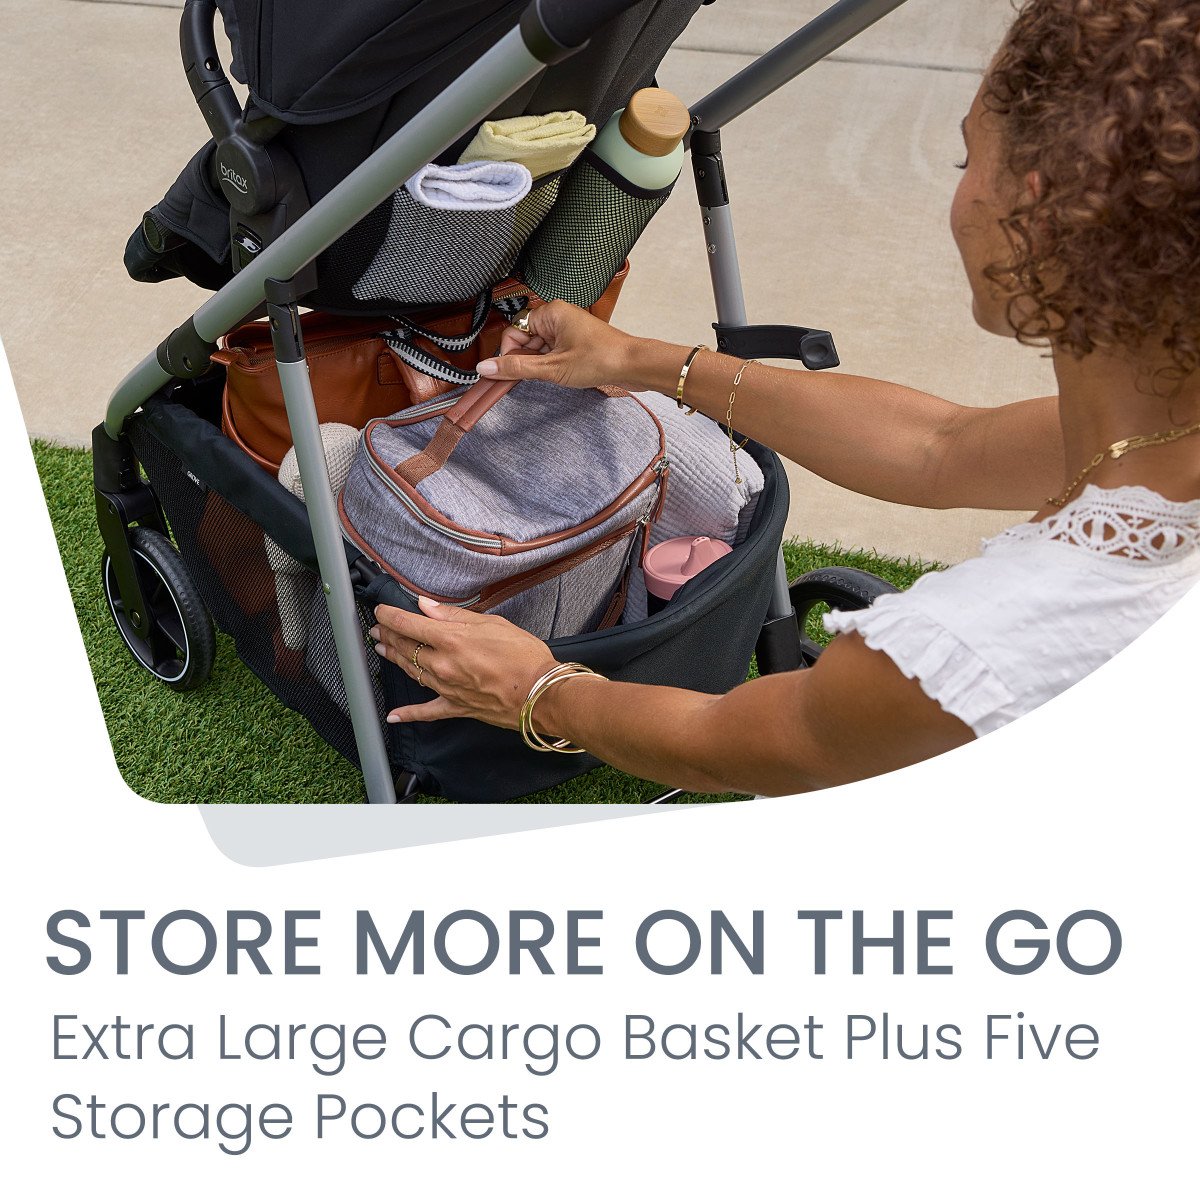 Extra Large Cargo Basket and 5 storage pockets